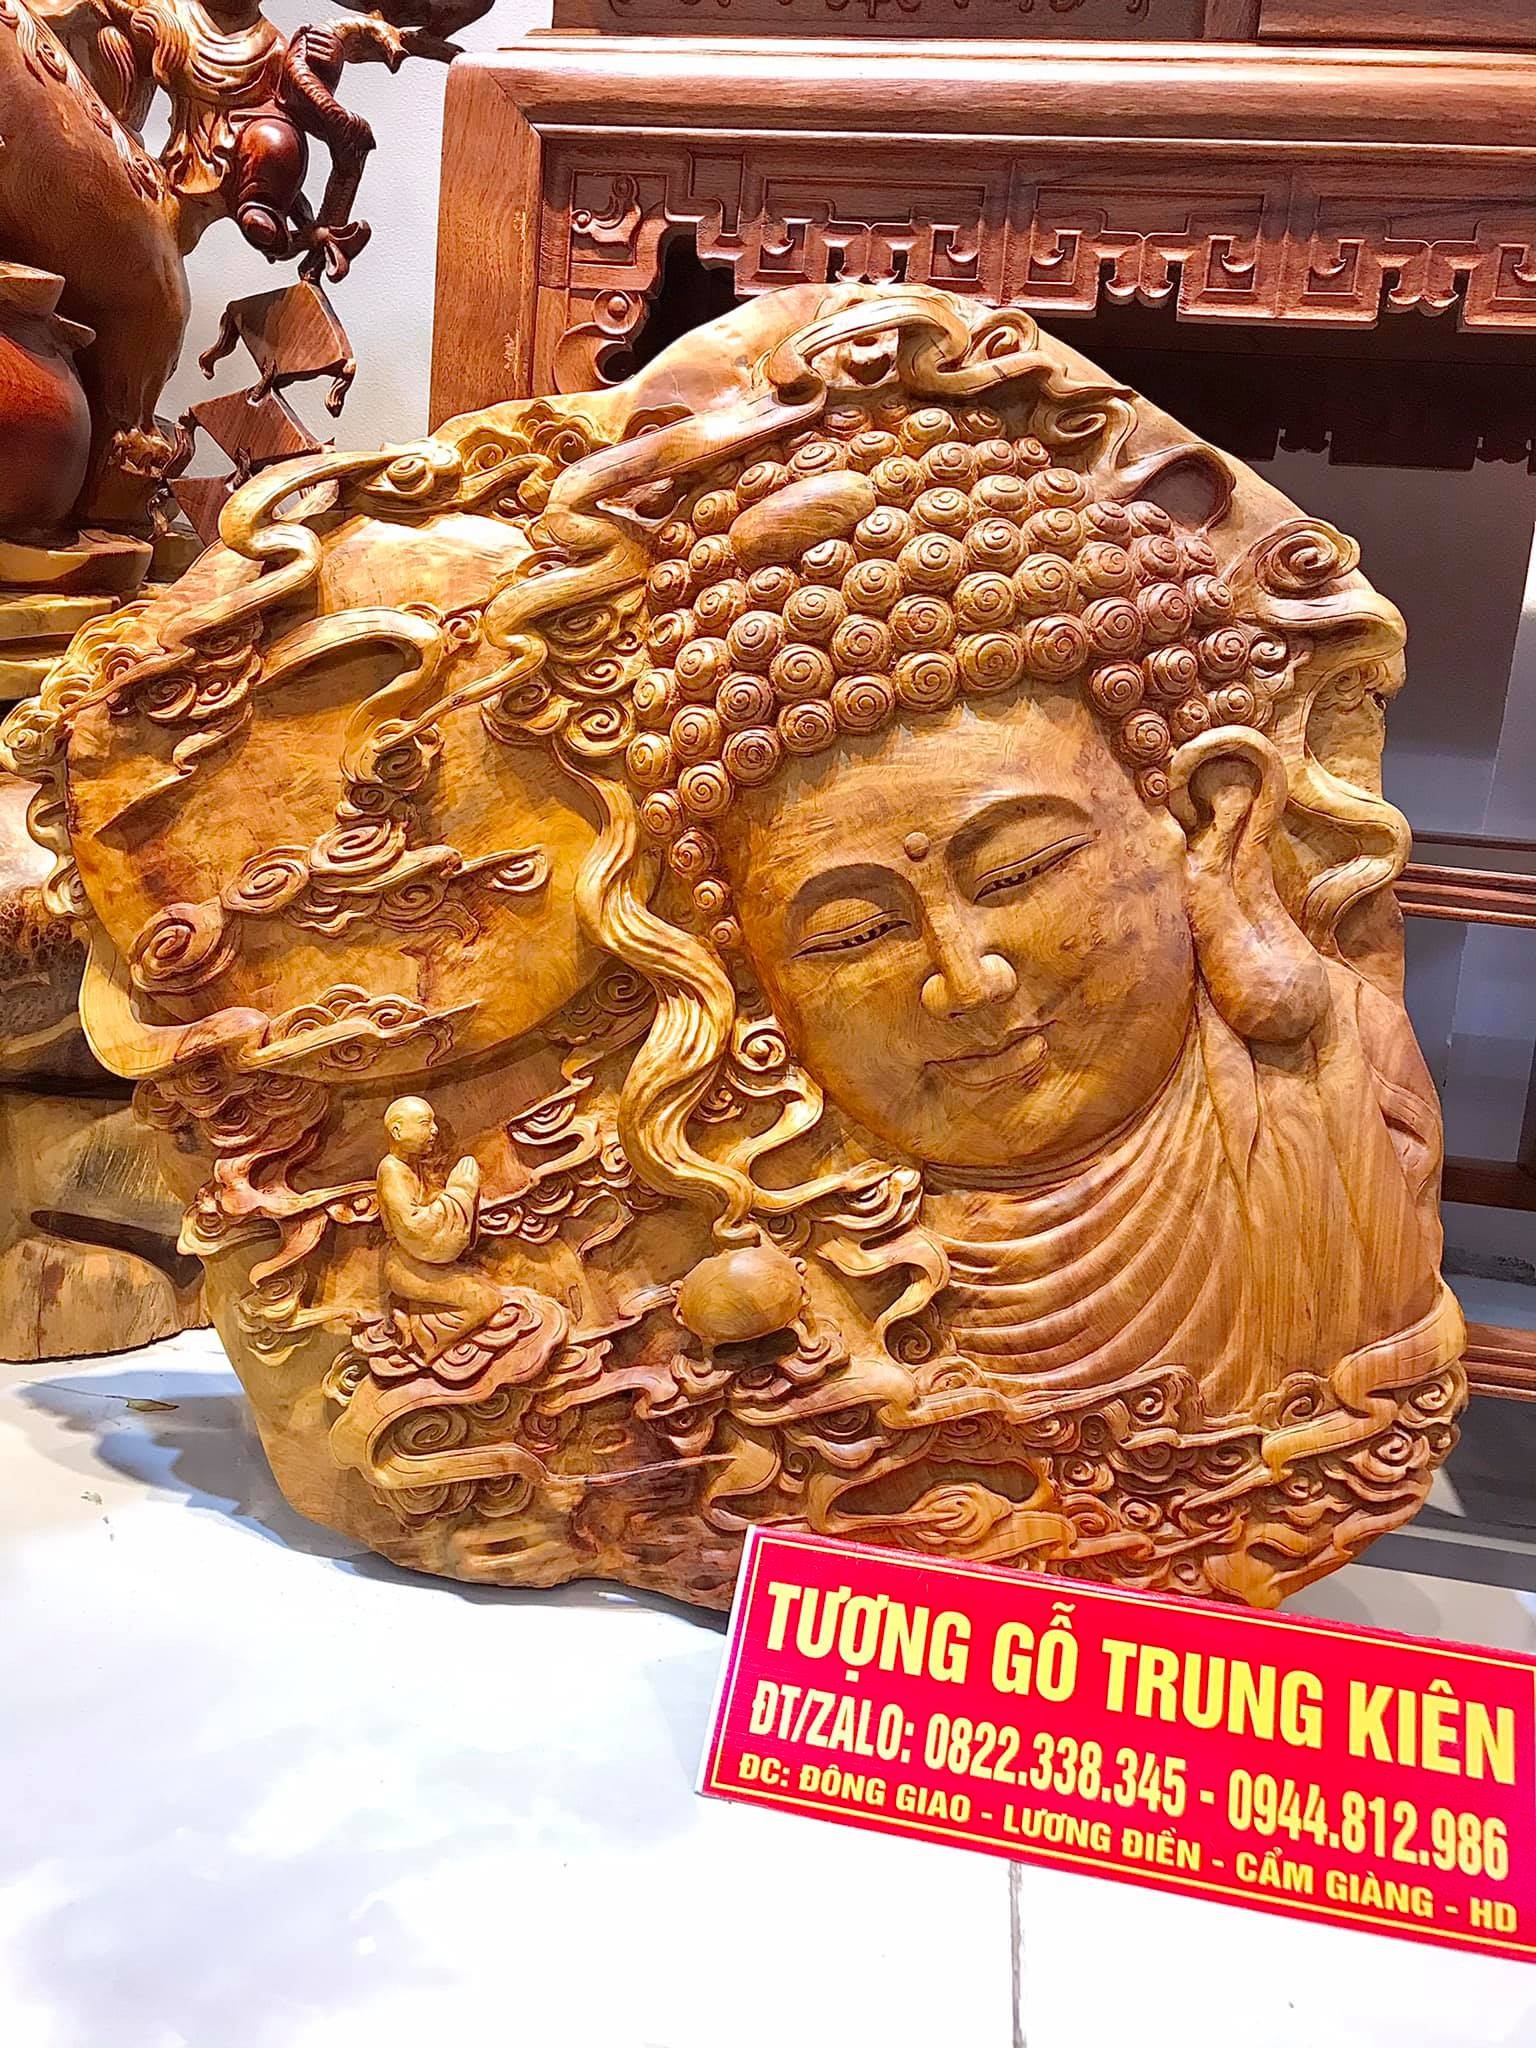 Sự đa dạng về nghệ thuật và ý nghĩa của sản phẩm mang lại tại tượng gỗ Trung Kiên